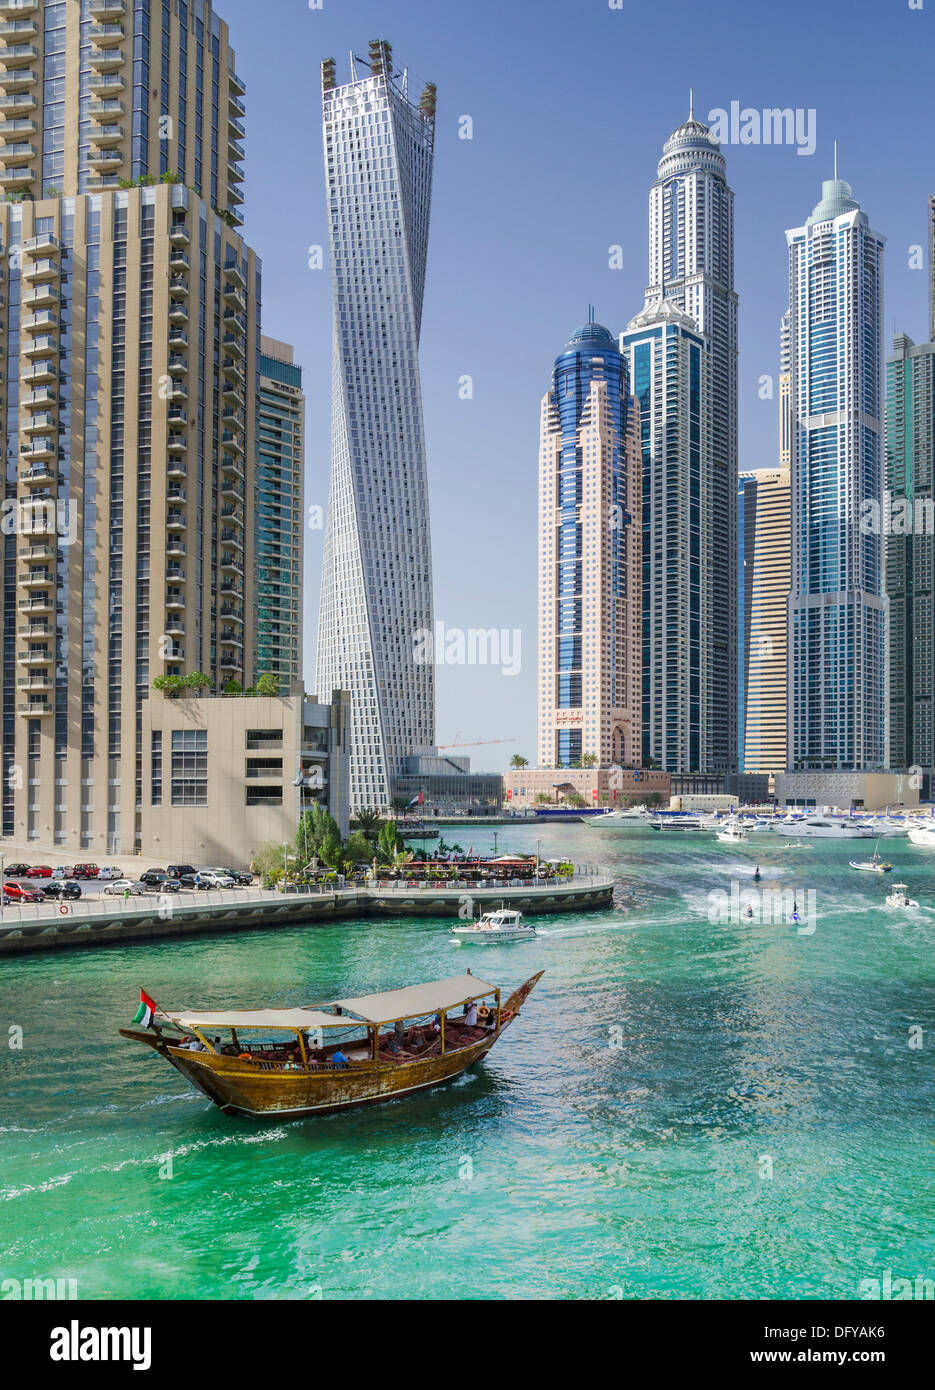 Una embarcación dhow navega alrededor de Dubai Marina de las hidrovías del jet ski siguiente bajo los rascacielos y el paseo del puerto deportivo de Dubai Foto de stock